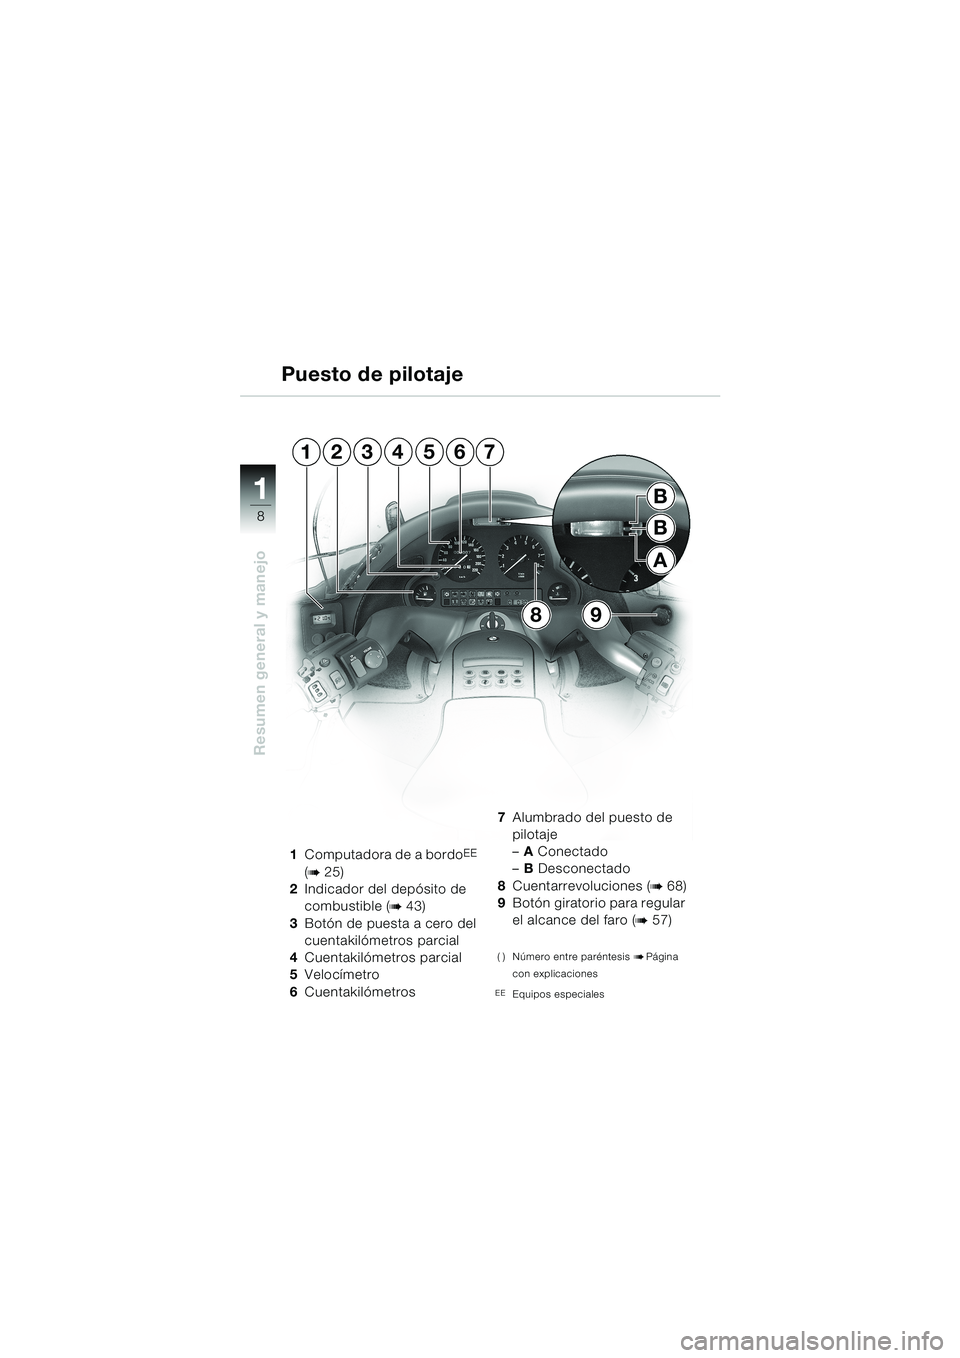 BMW MOTORRAD K 1200 LT 2002  Manual de instrucciones (in Spanish) 8
Resumen general y manejo
1
Puesto de pilotaje
1Computadora de a bordoEE 
(
b 25)
2Indicador del depósito de 
combustible (
b 43)
3Botón de puesta a cero del 
cuentakilómetros parcial
4Cuentakiló